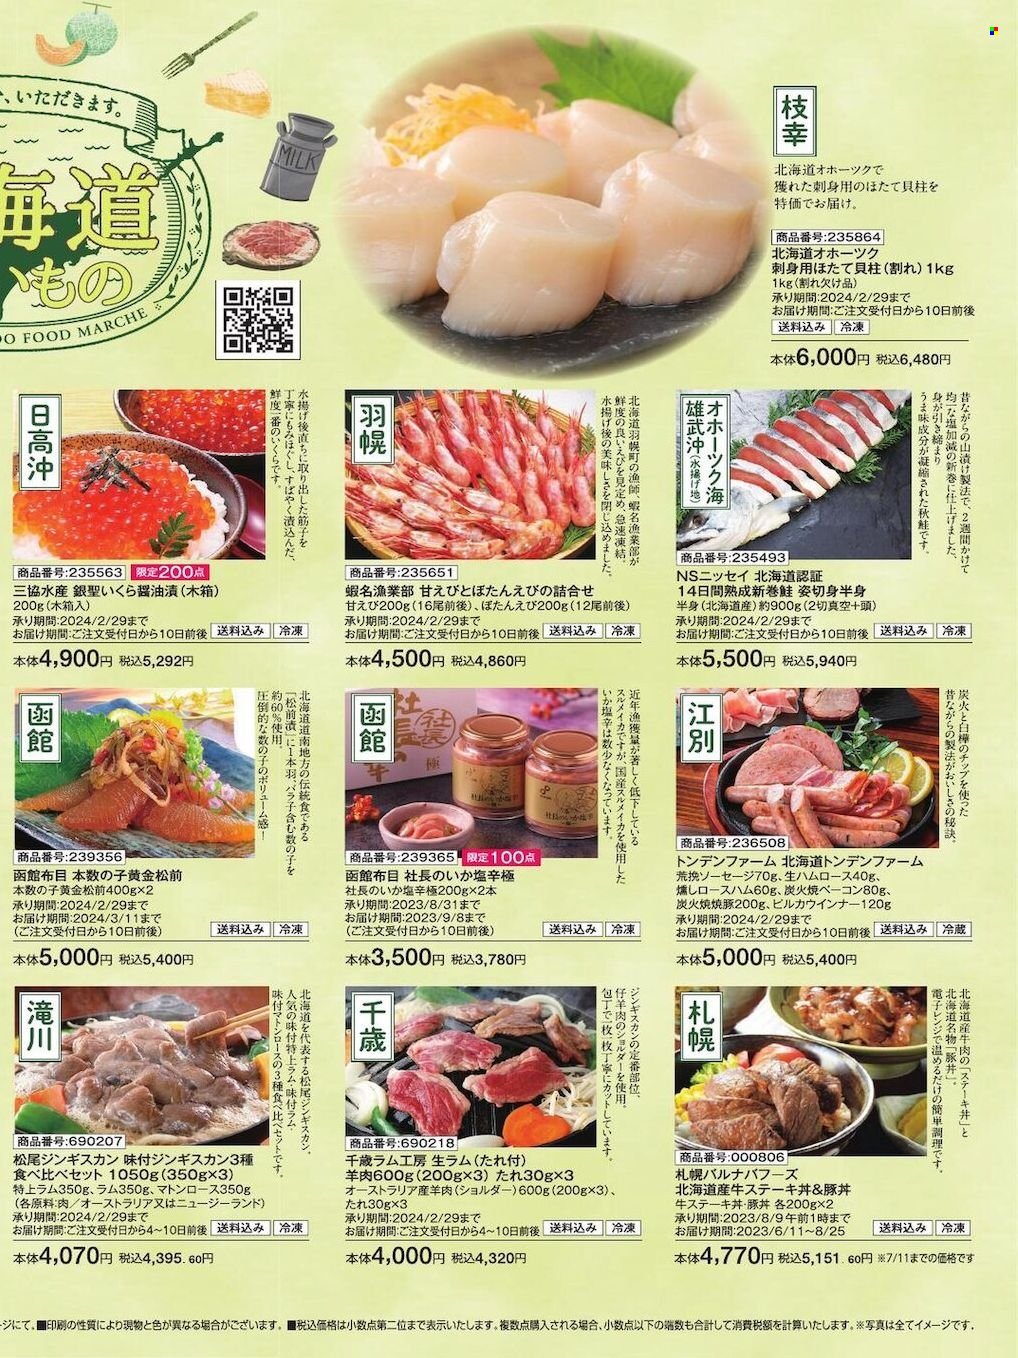 thumbnail - イオンチラシ - 2023年6月1日 - 2023年6月30日 - セール製品 - いちご, 刺身, 刺身用ほたて, 米, 豚。ページ9。